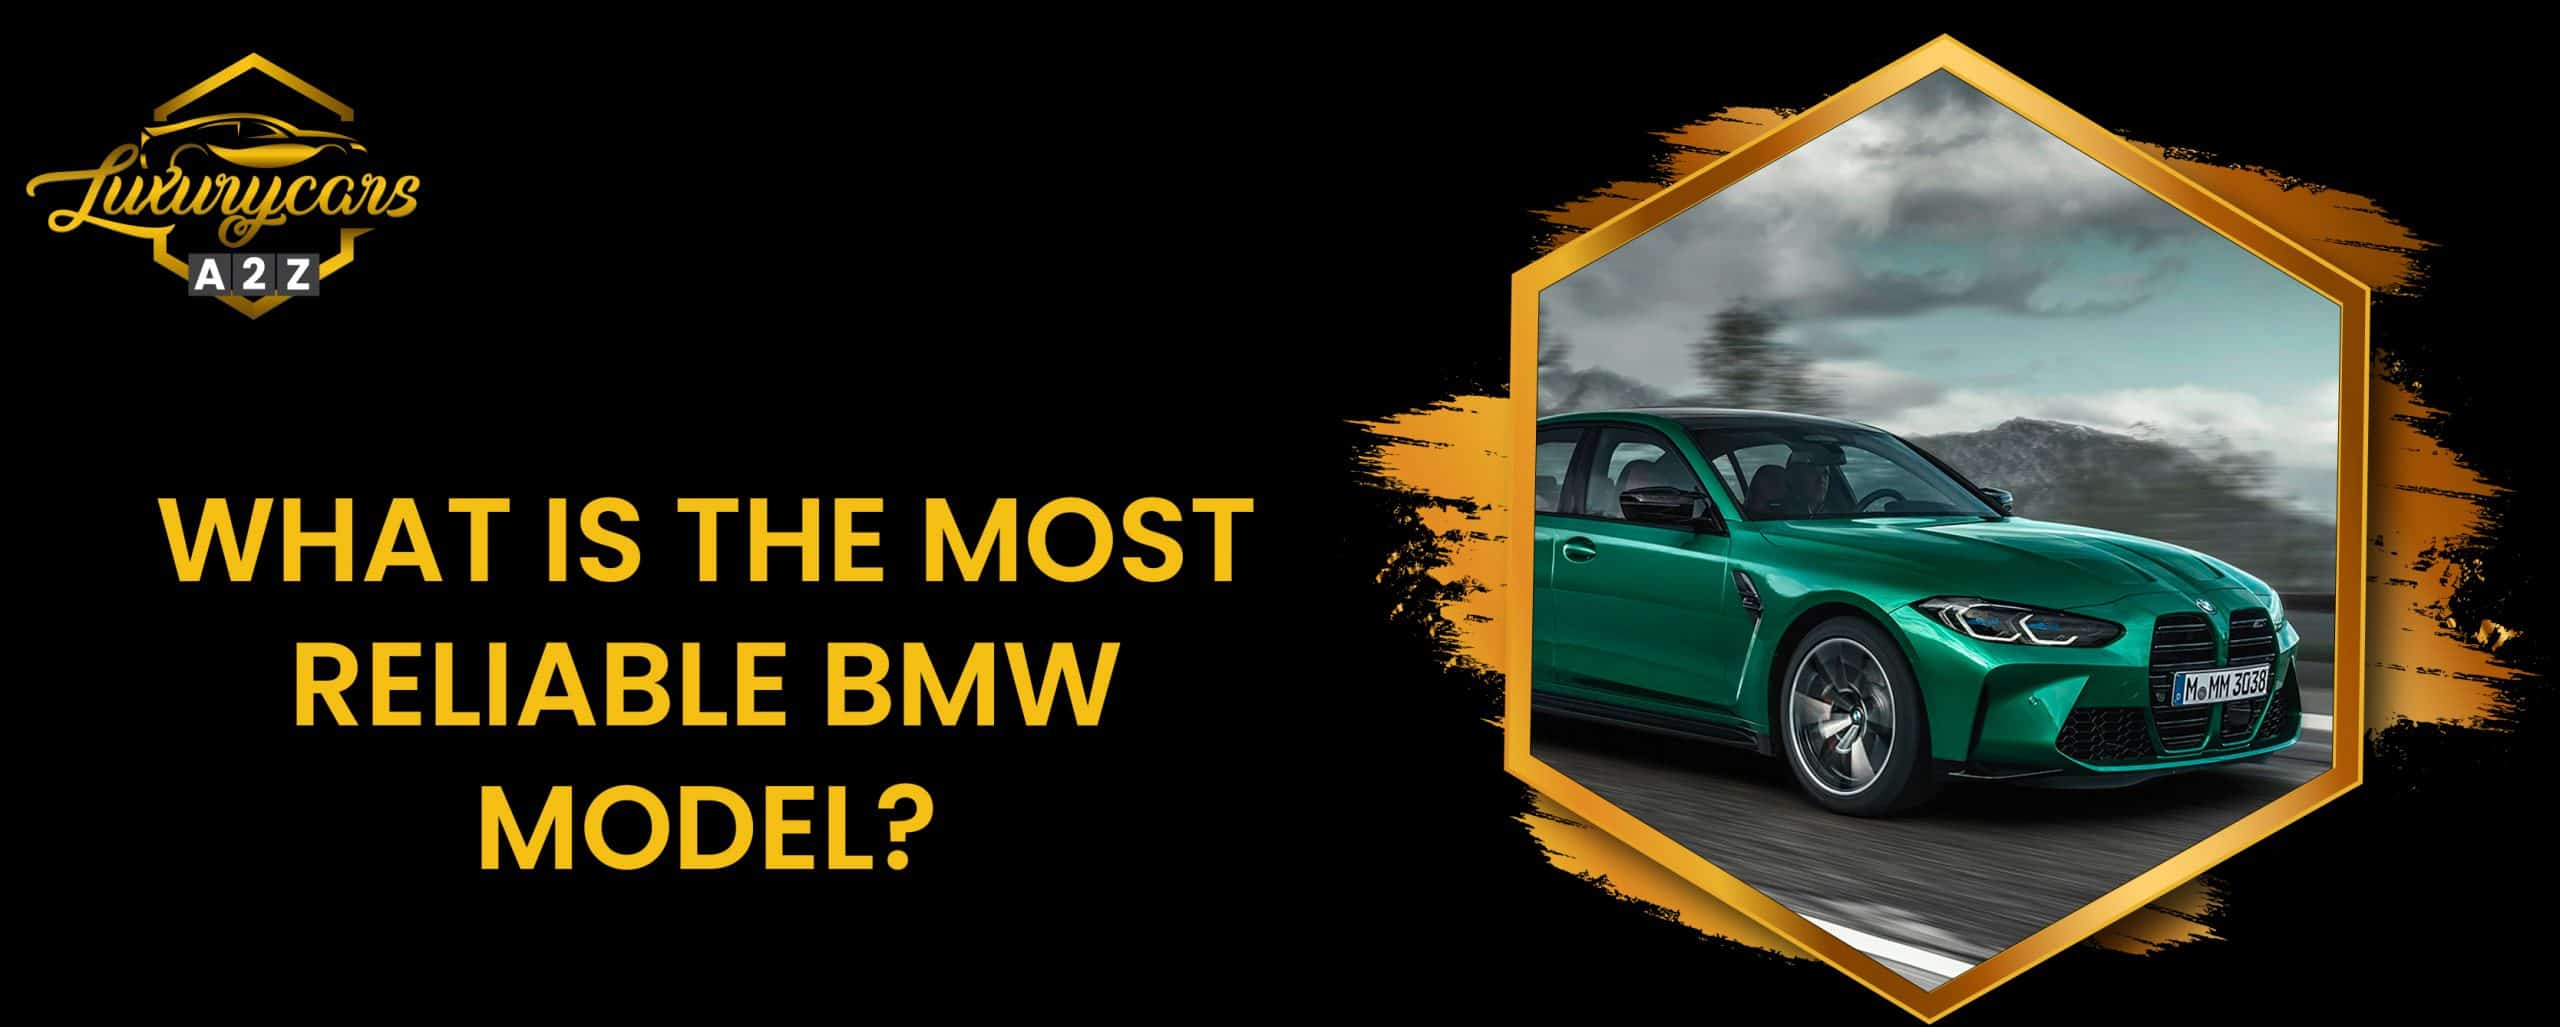 Quel est le modèle BMW le plus fiable ?